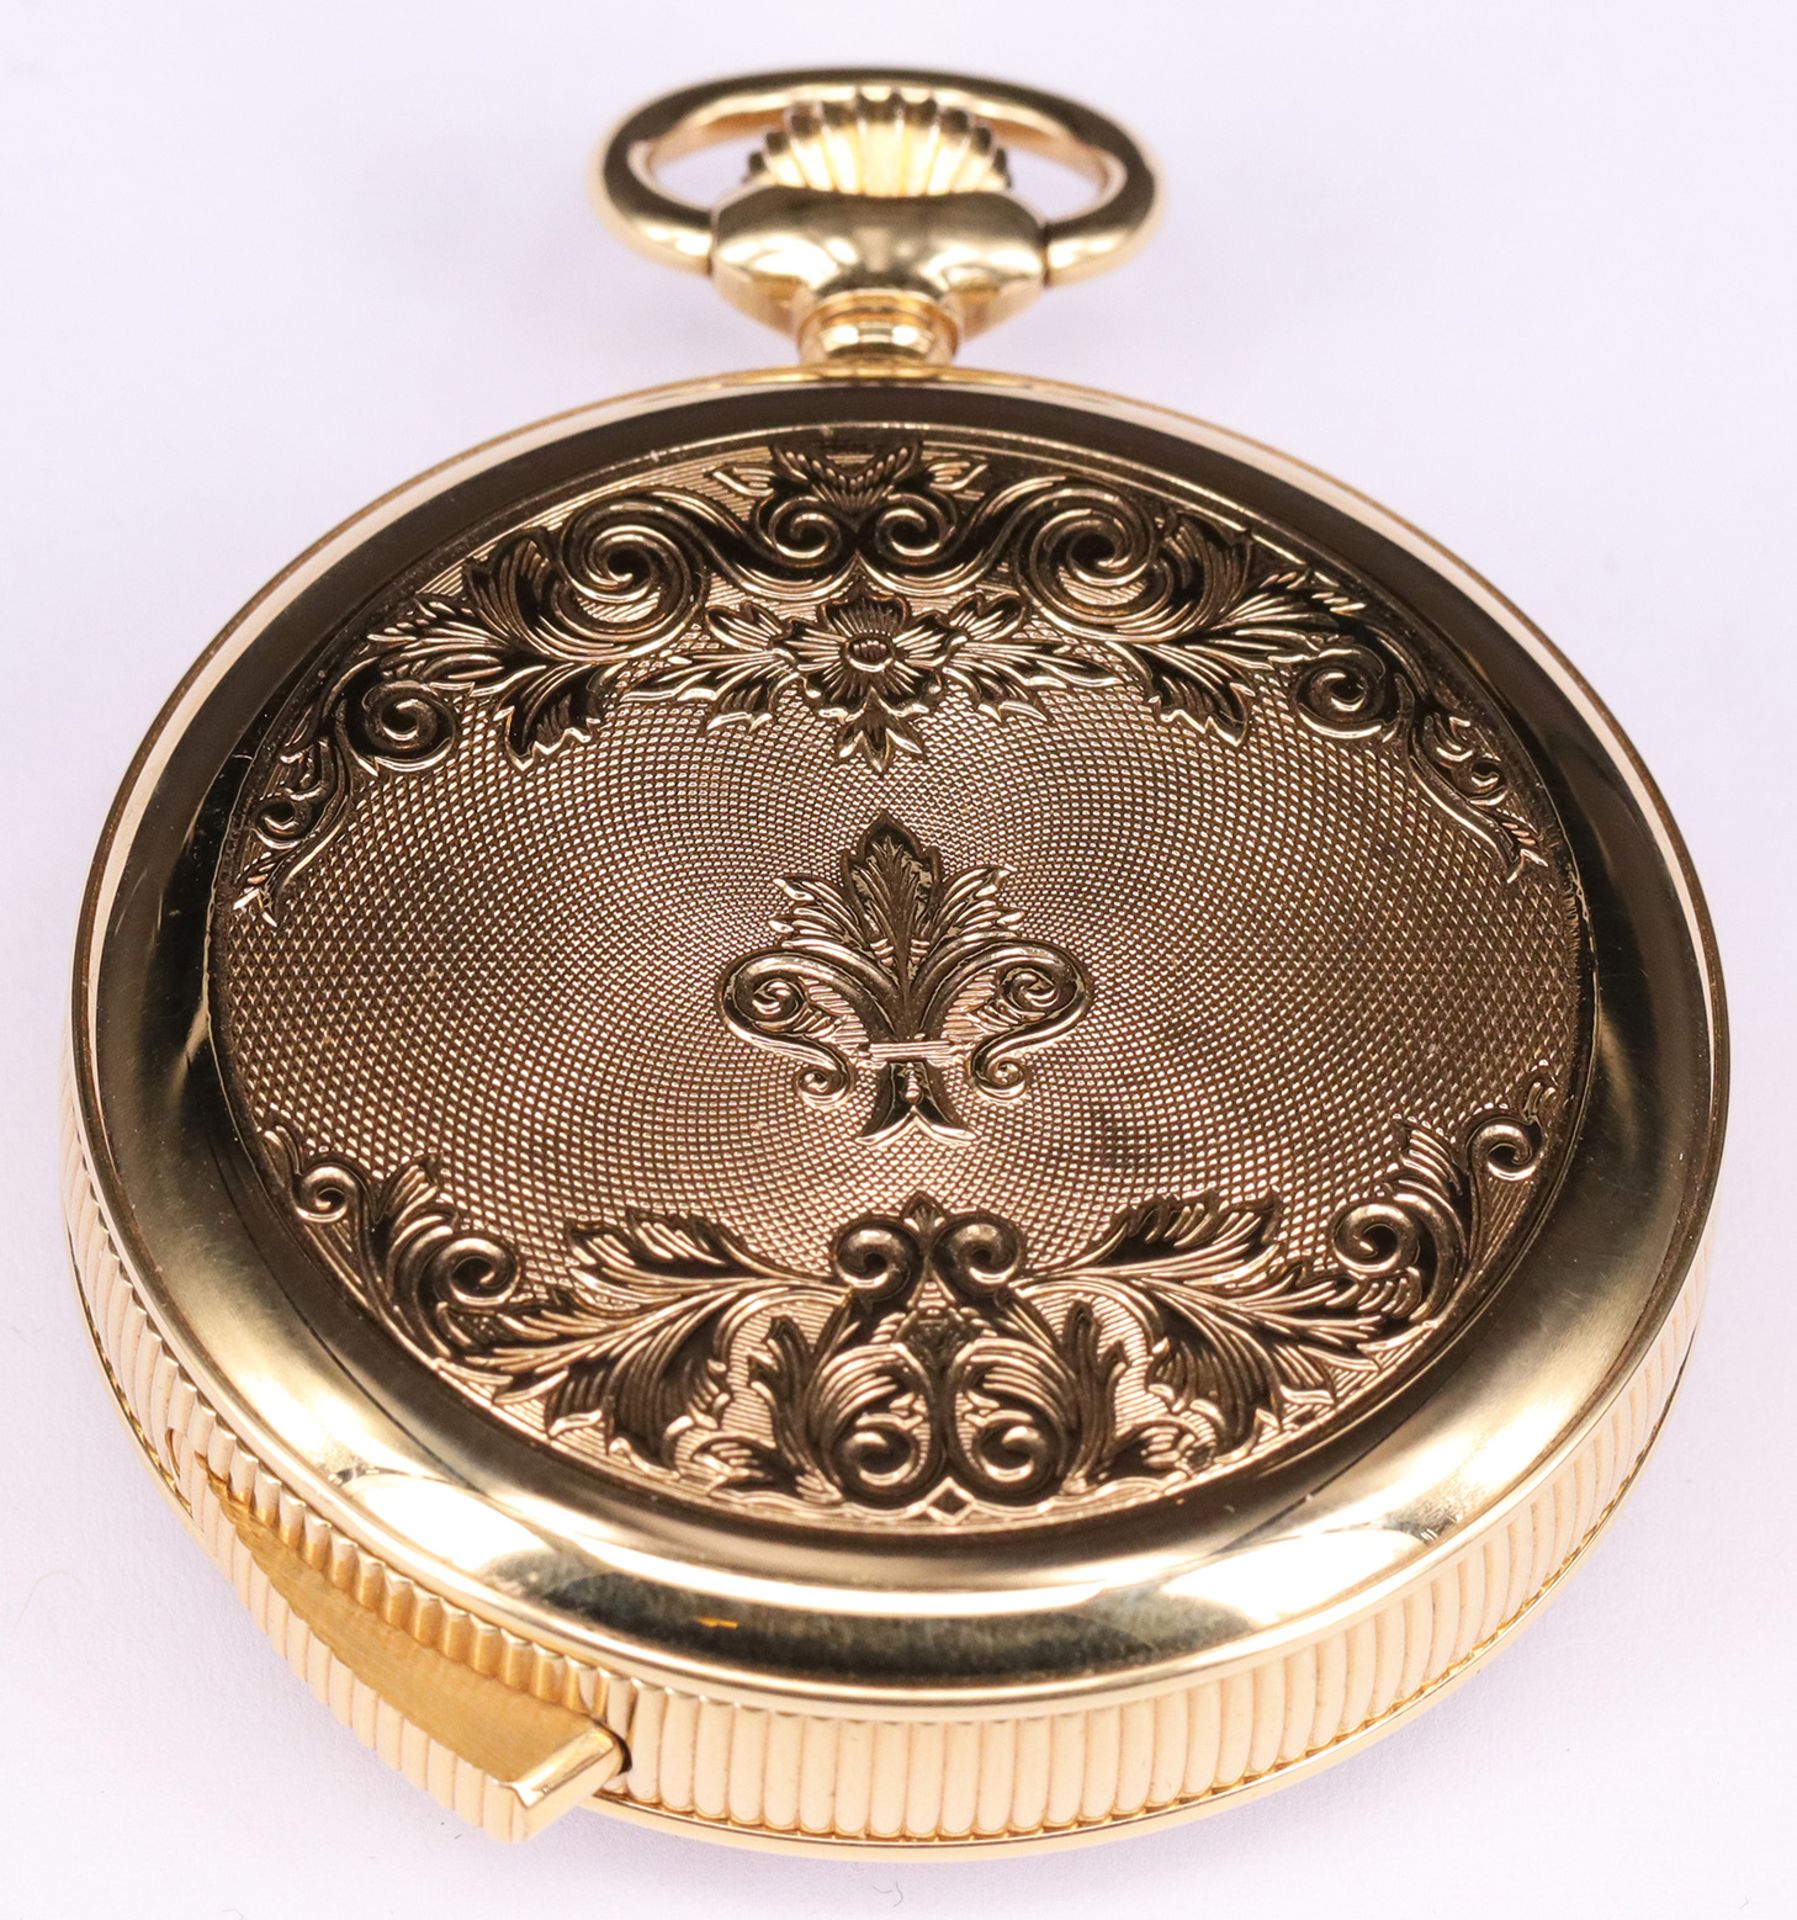 3 Taschenuhren, Reuge und Kelek: 2 TU Charles Reuge (Schweiz) Sainte Croix, Goldplated, mit Spieluhr - Bild 3 aus 15